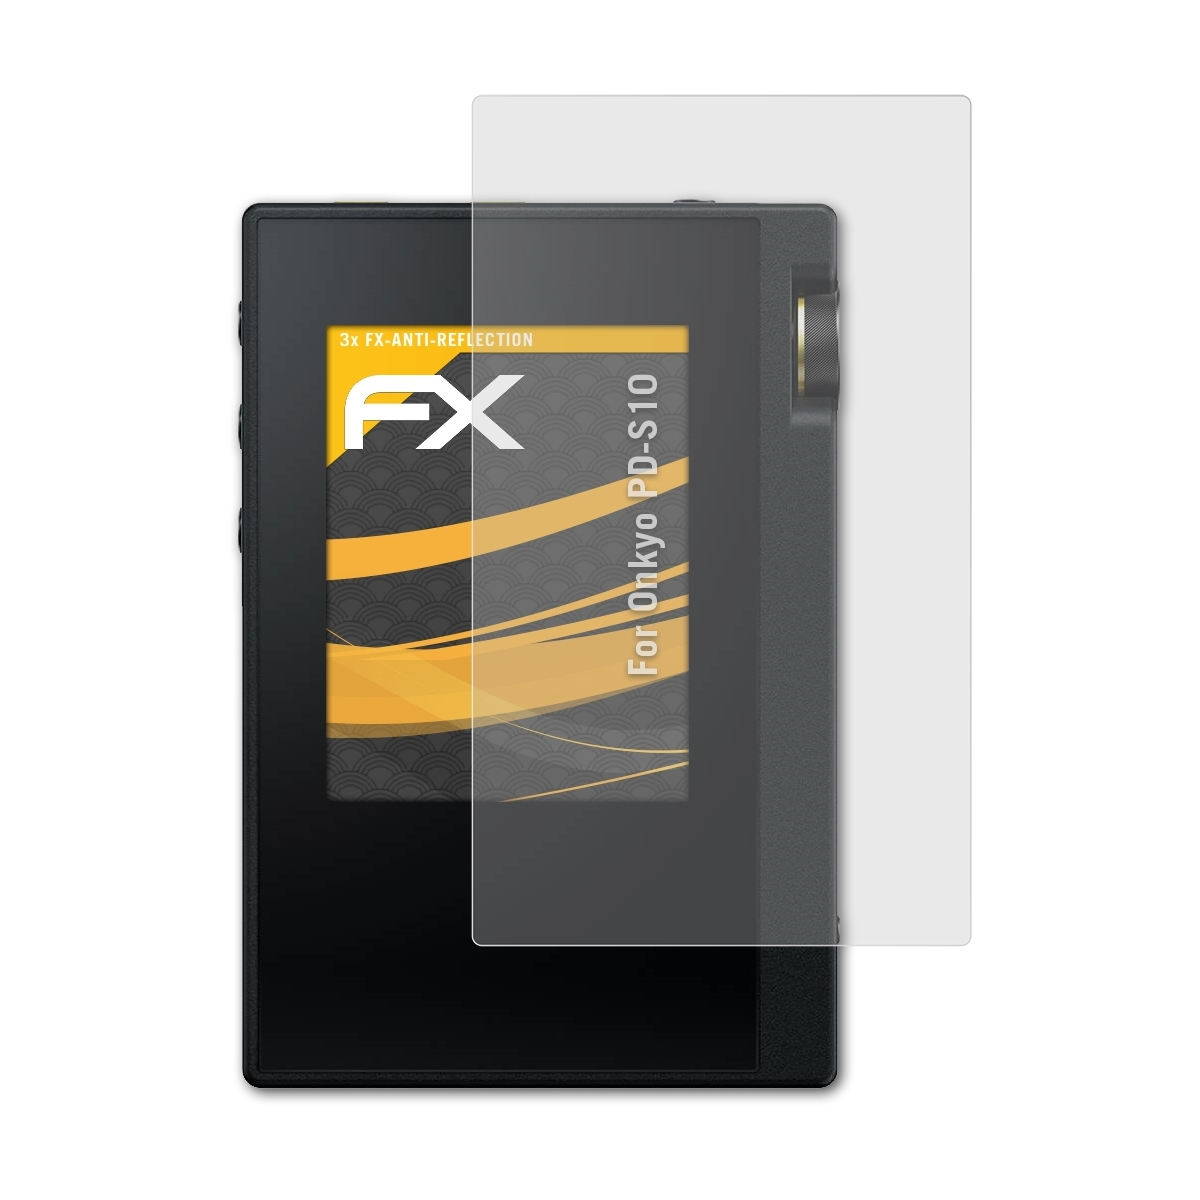 ATFOLIX 3x FX-Antireflex Displayschutz(für PD-S10) Onkyo